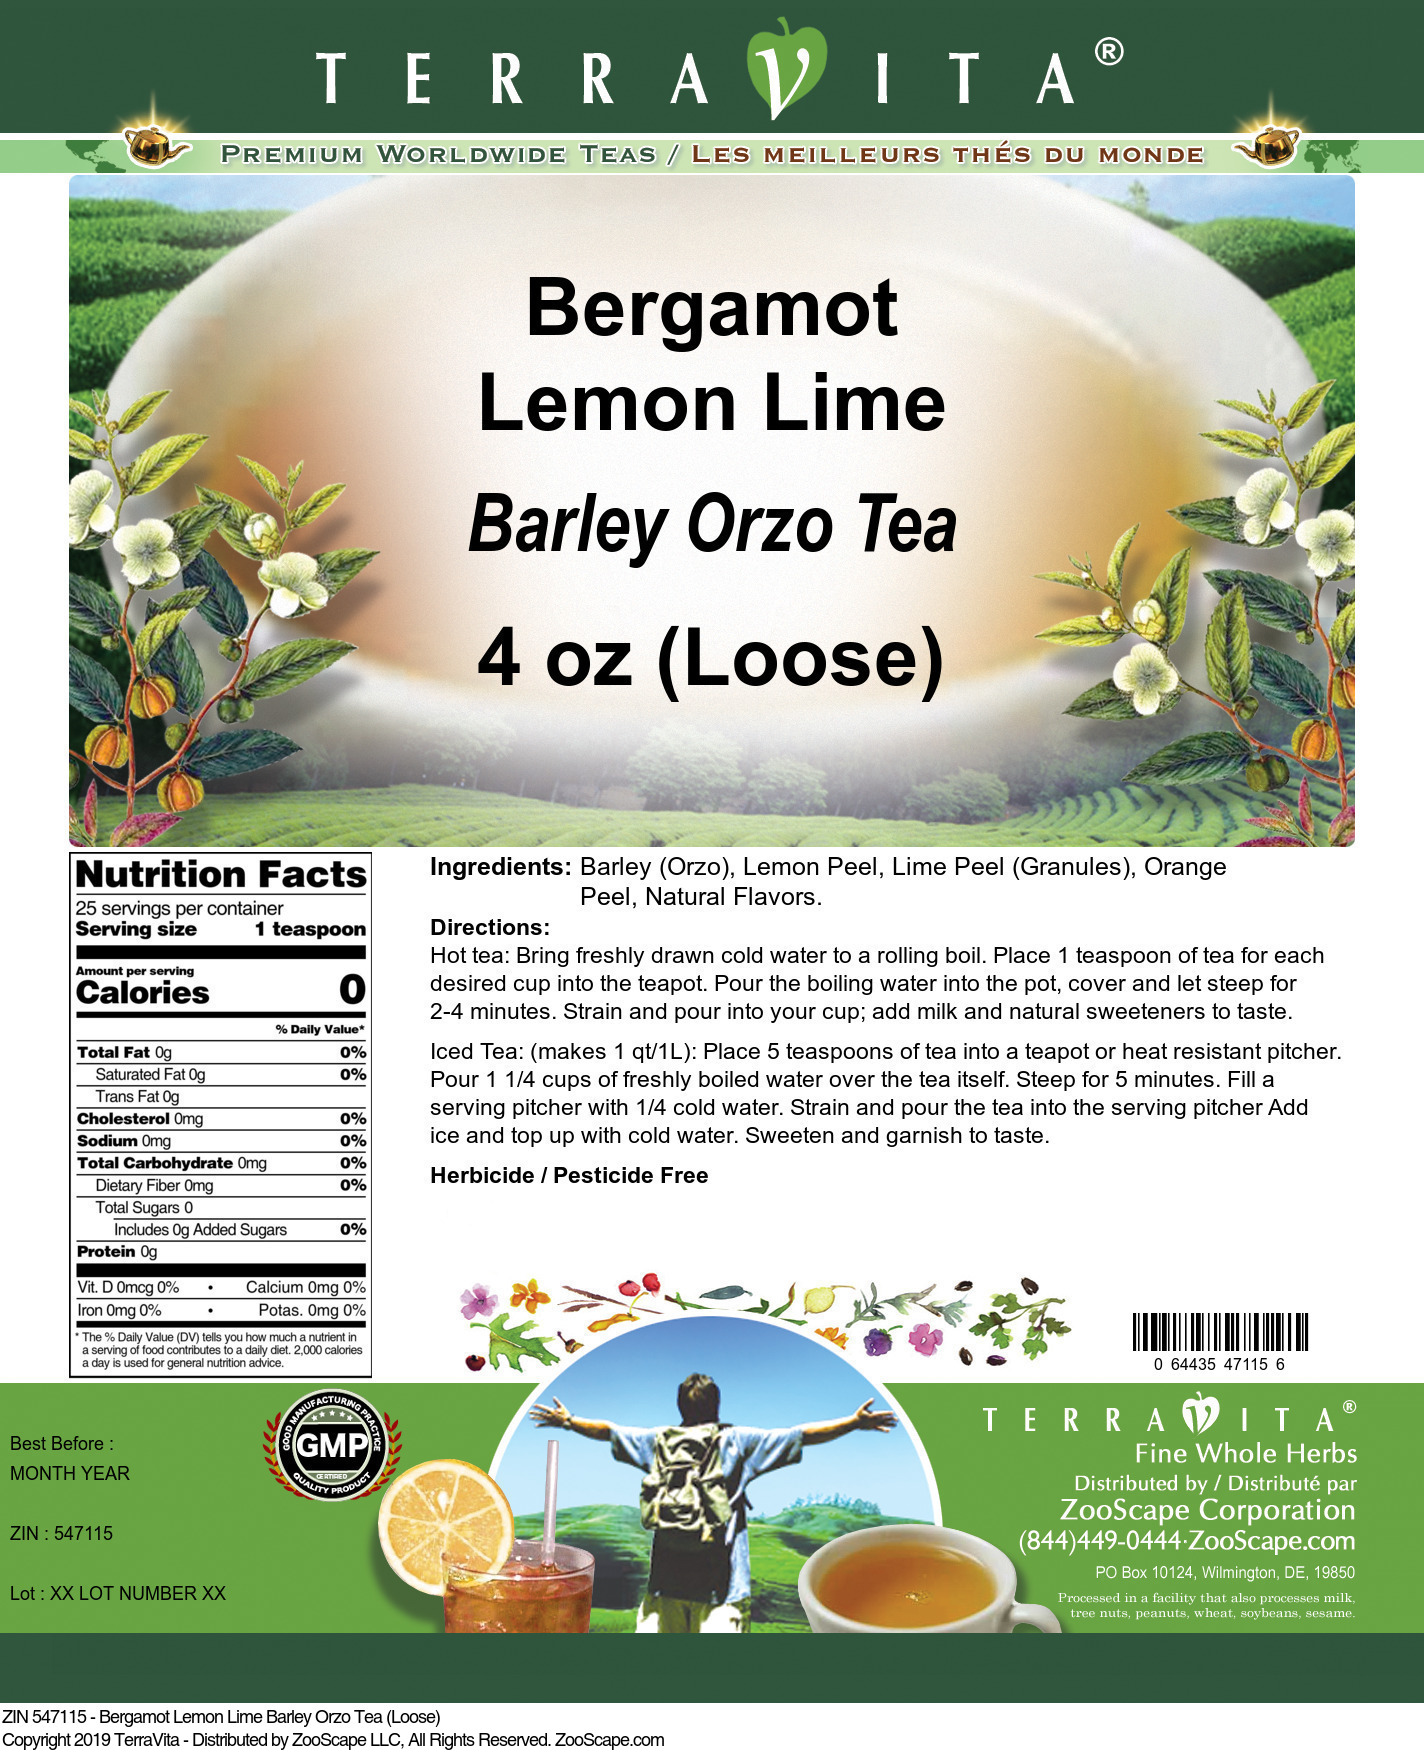 Bergamot Lemon Lime Barley Orzo Tea (Loose) - Label